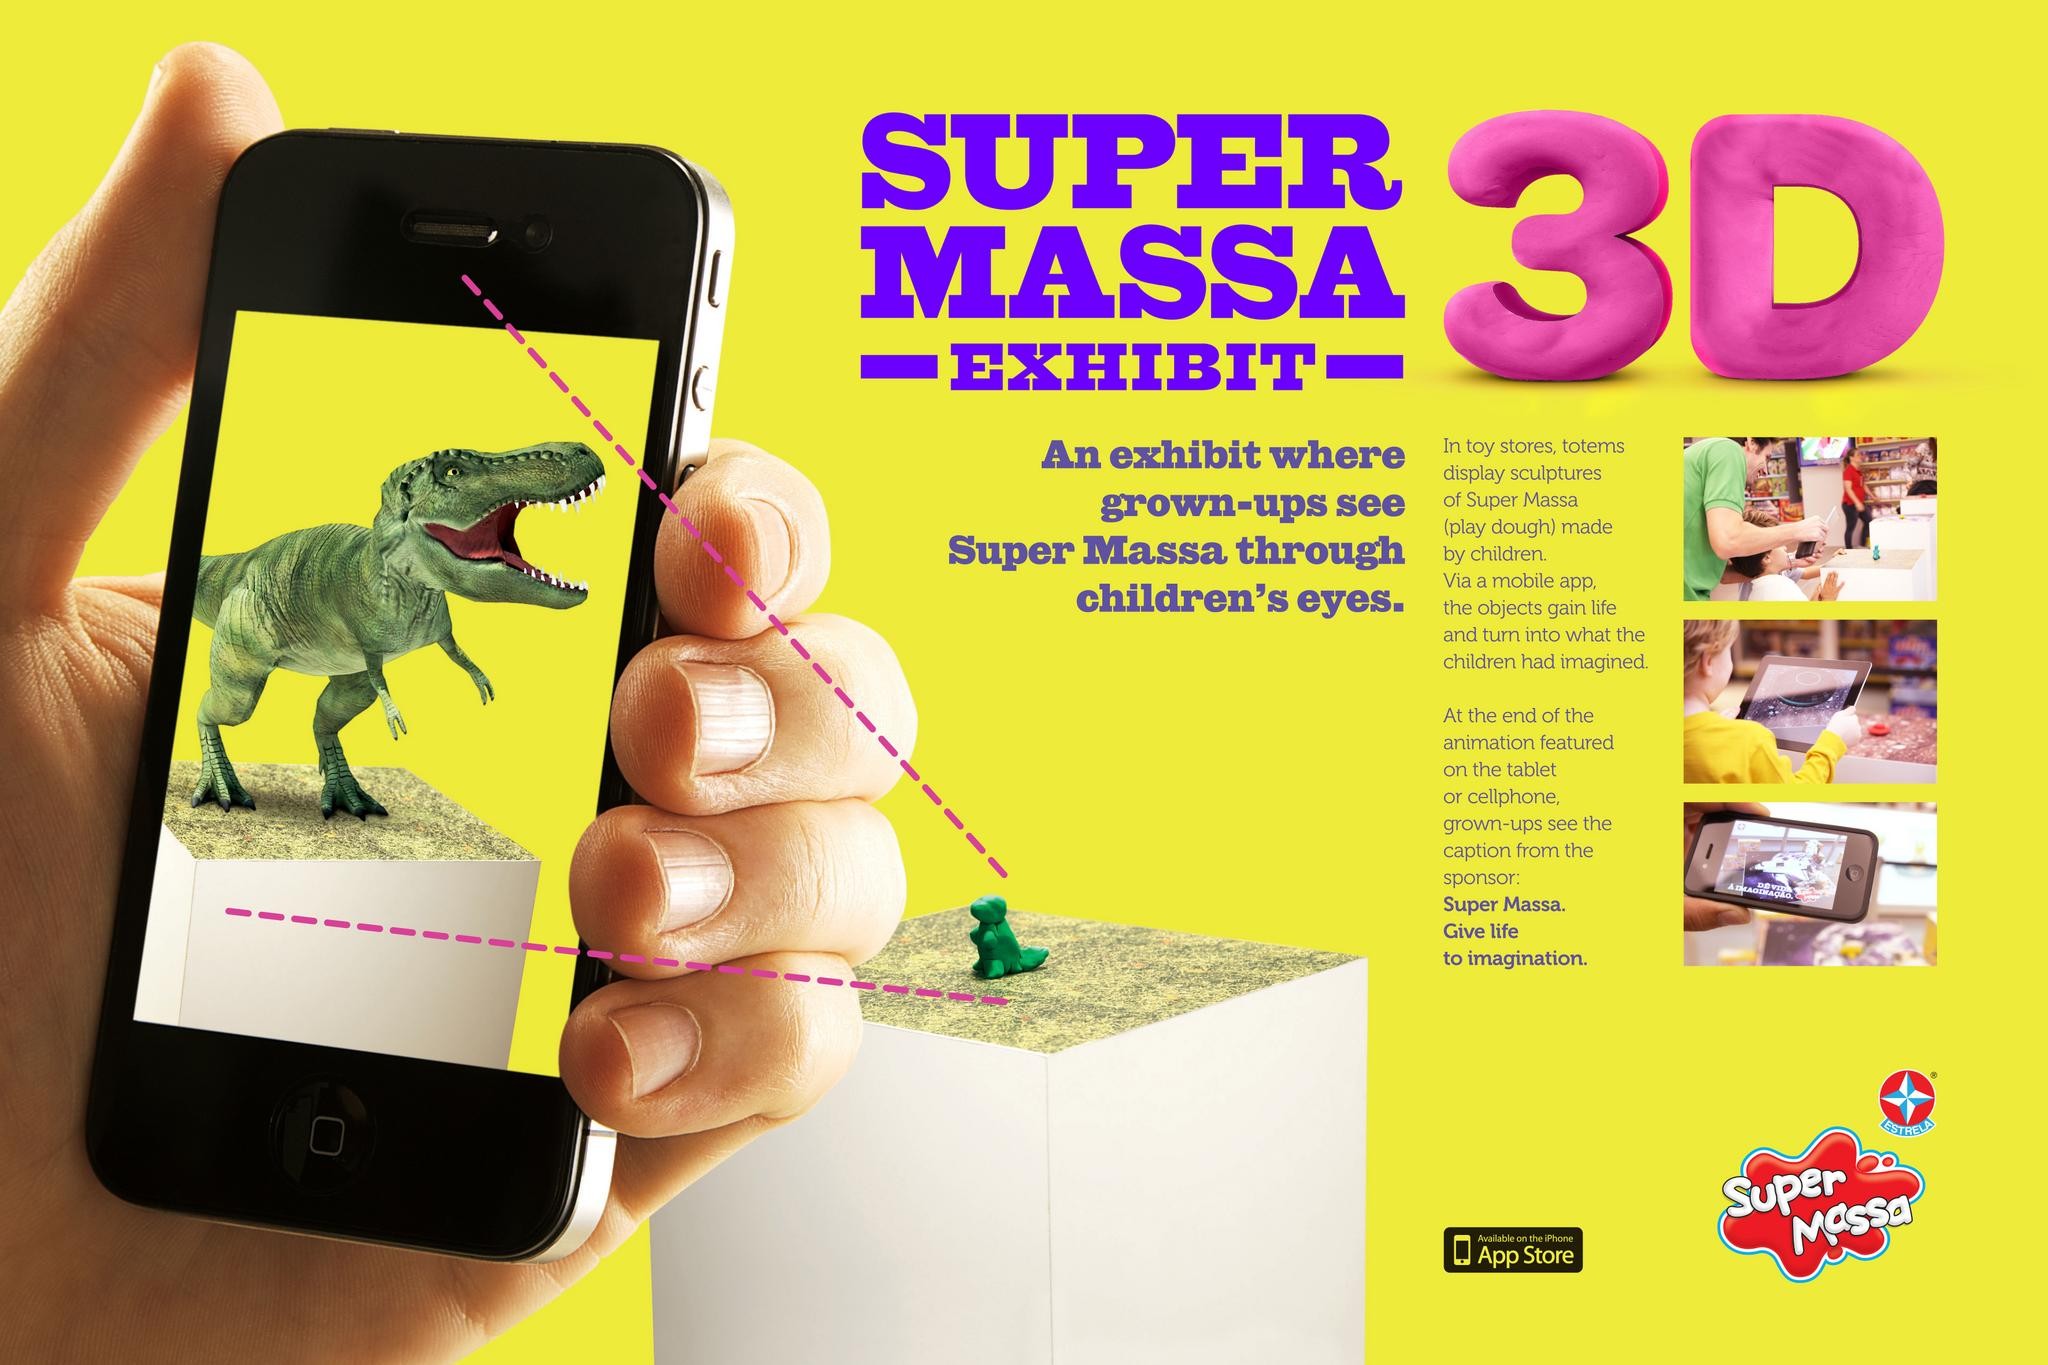 SUPER MASSA 3D